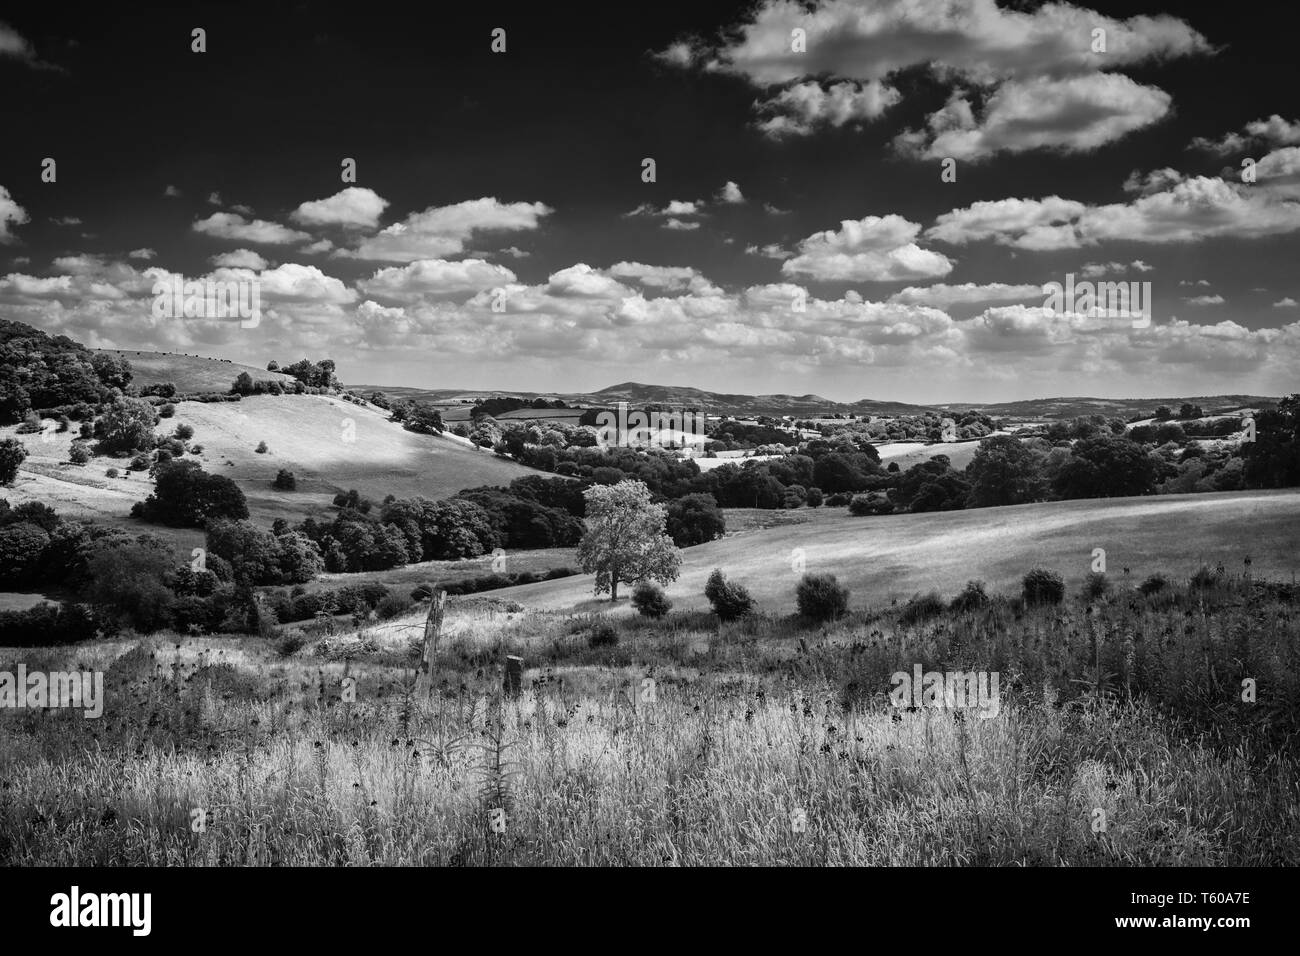 La campagne pittoresque de collines vertes sur journée ensoleillée dans le Nord du Pays de Galles, Royaume-Uni. Edit monochrome Banque D'Images